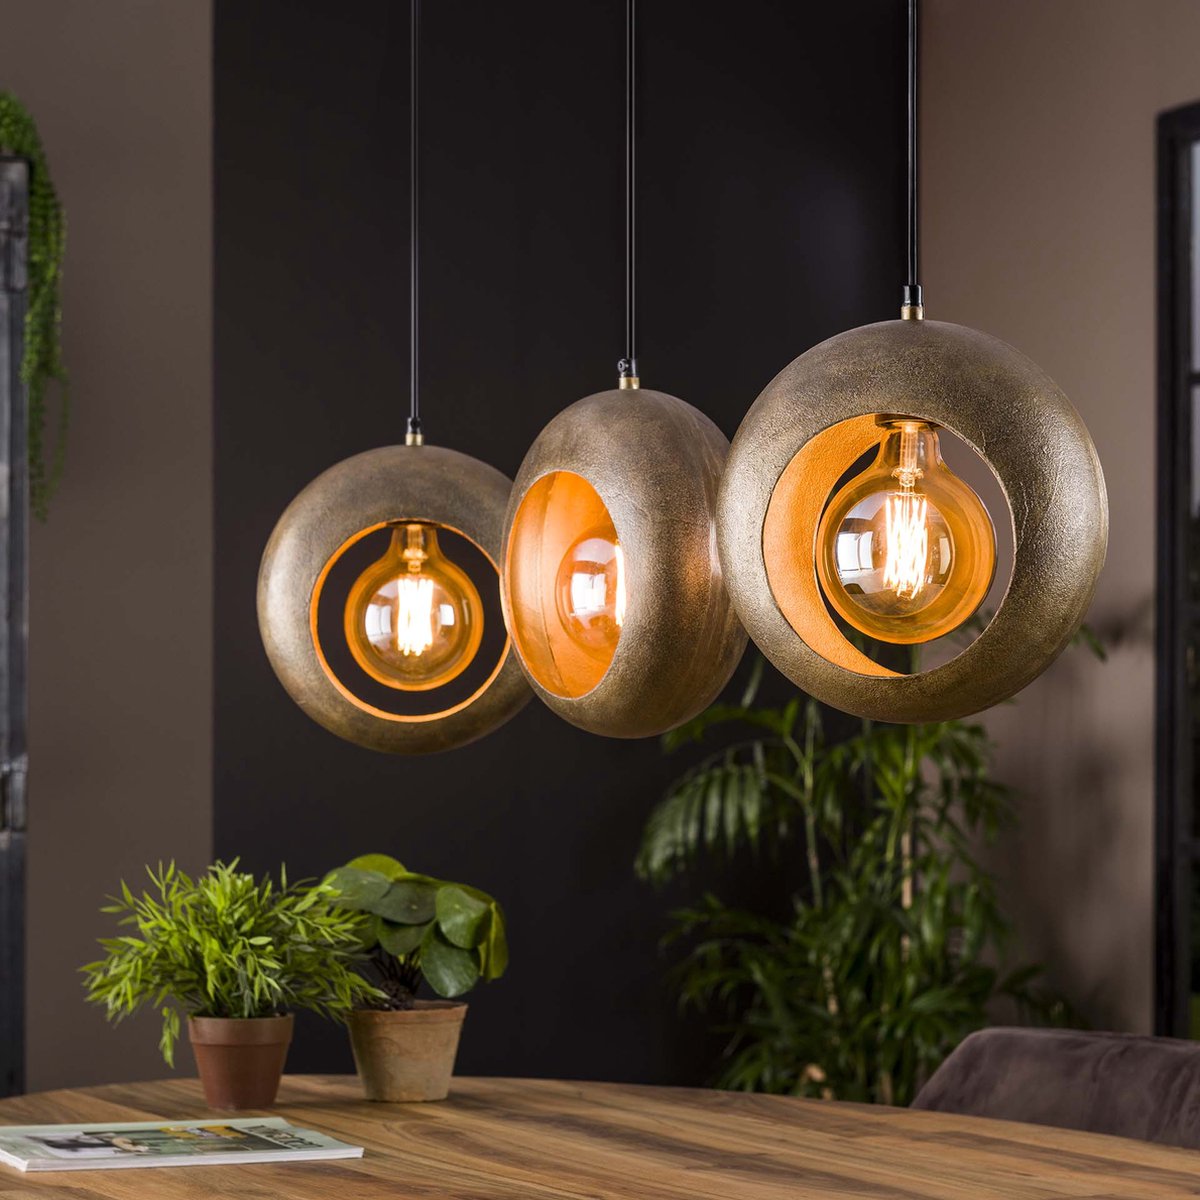 Hanglamp Track | 3 lichts | 95 cm | ⌀ 28 cm | metaal | brons / bruin | eettafel / woonkamer lamp | modern / robuust / landelijk design